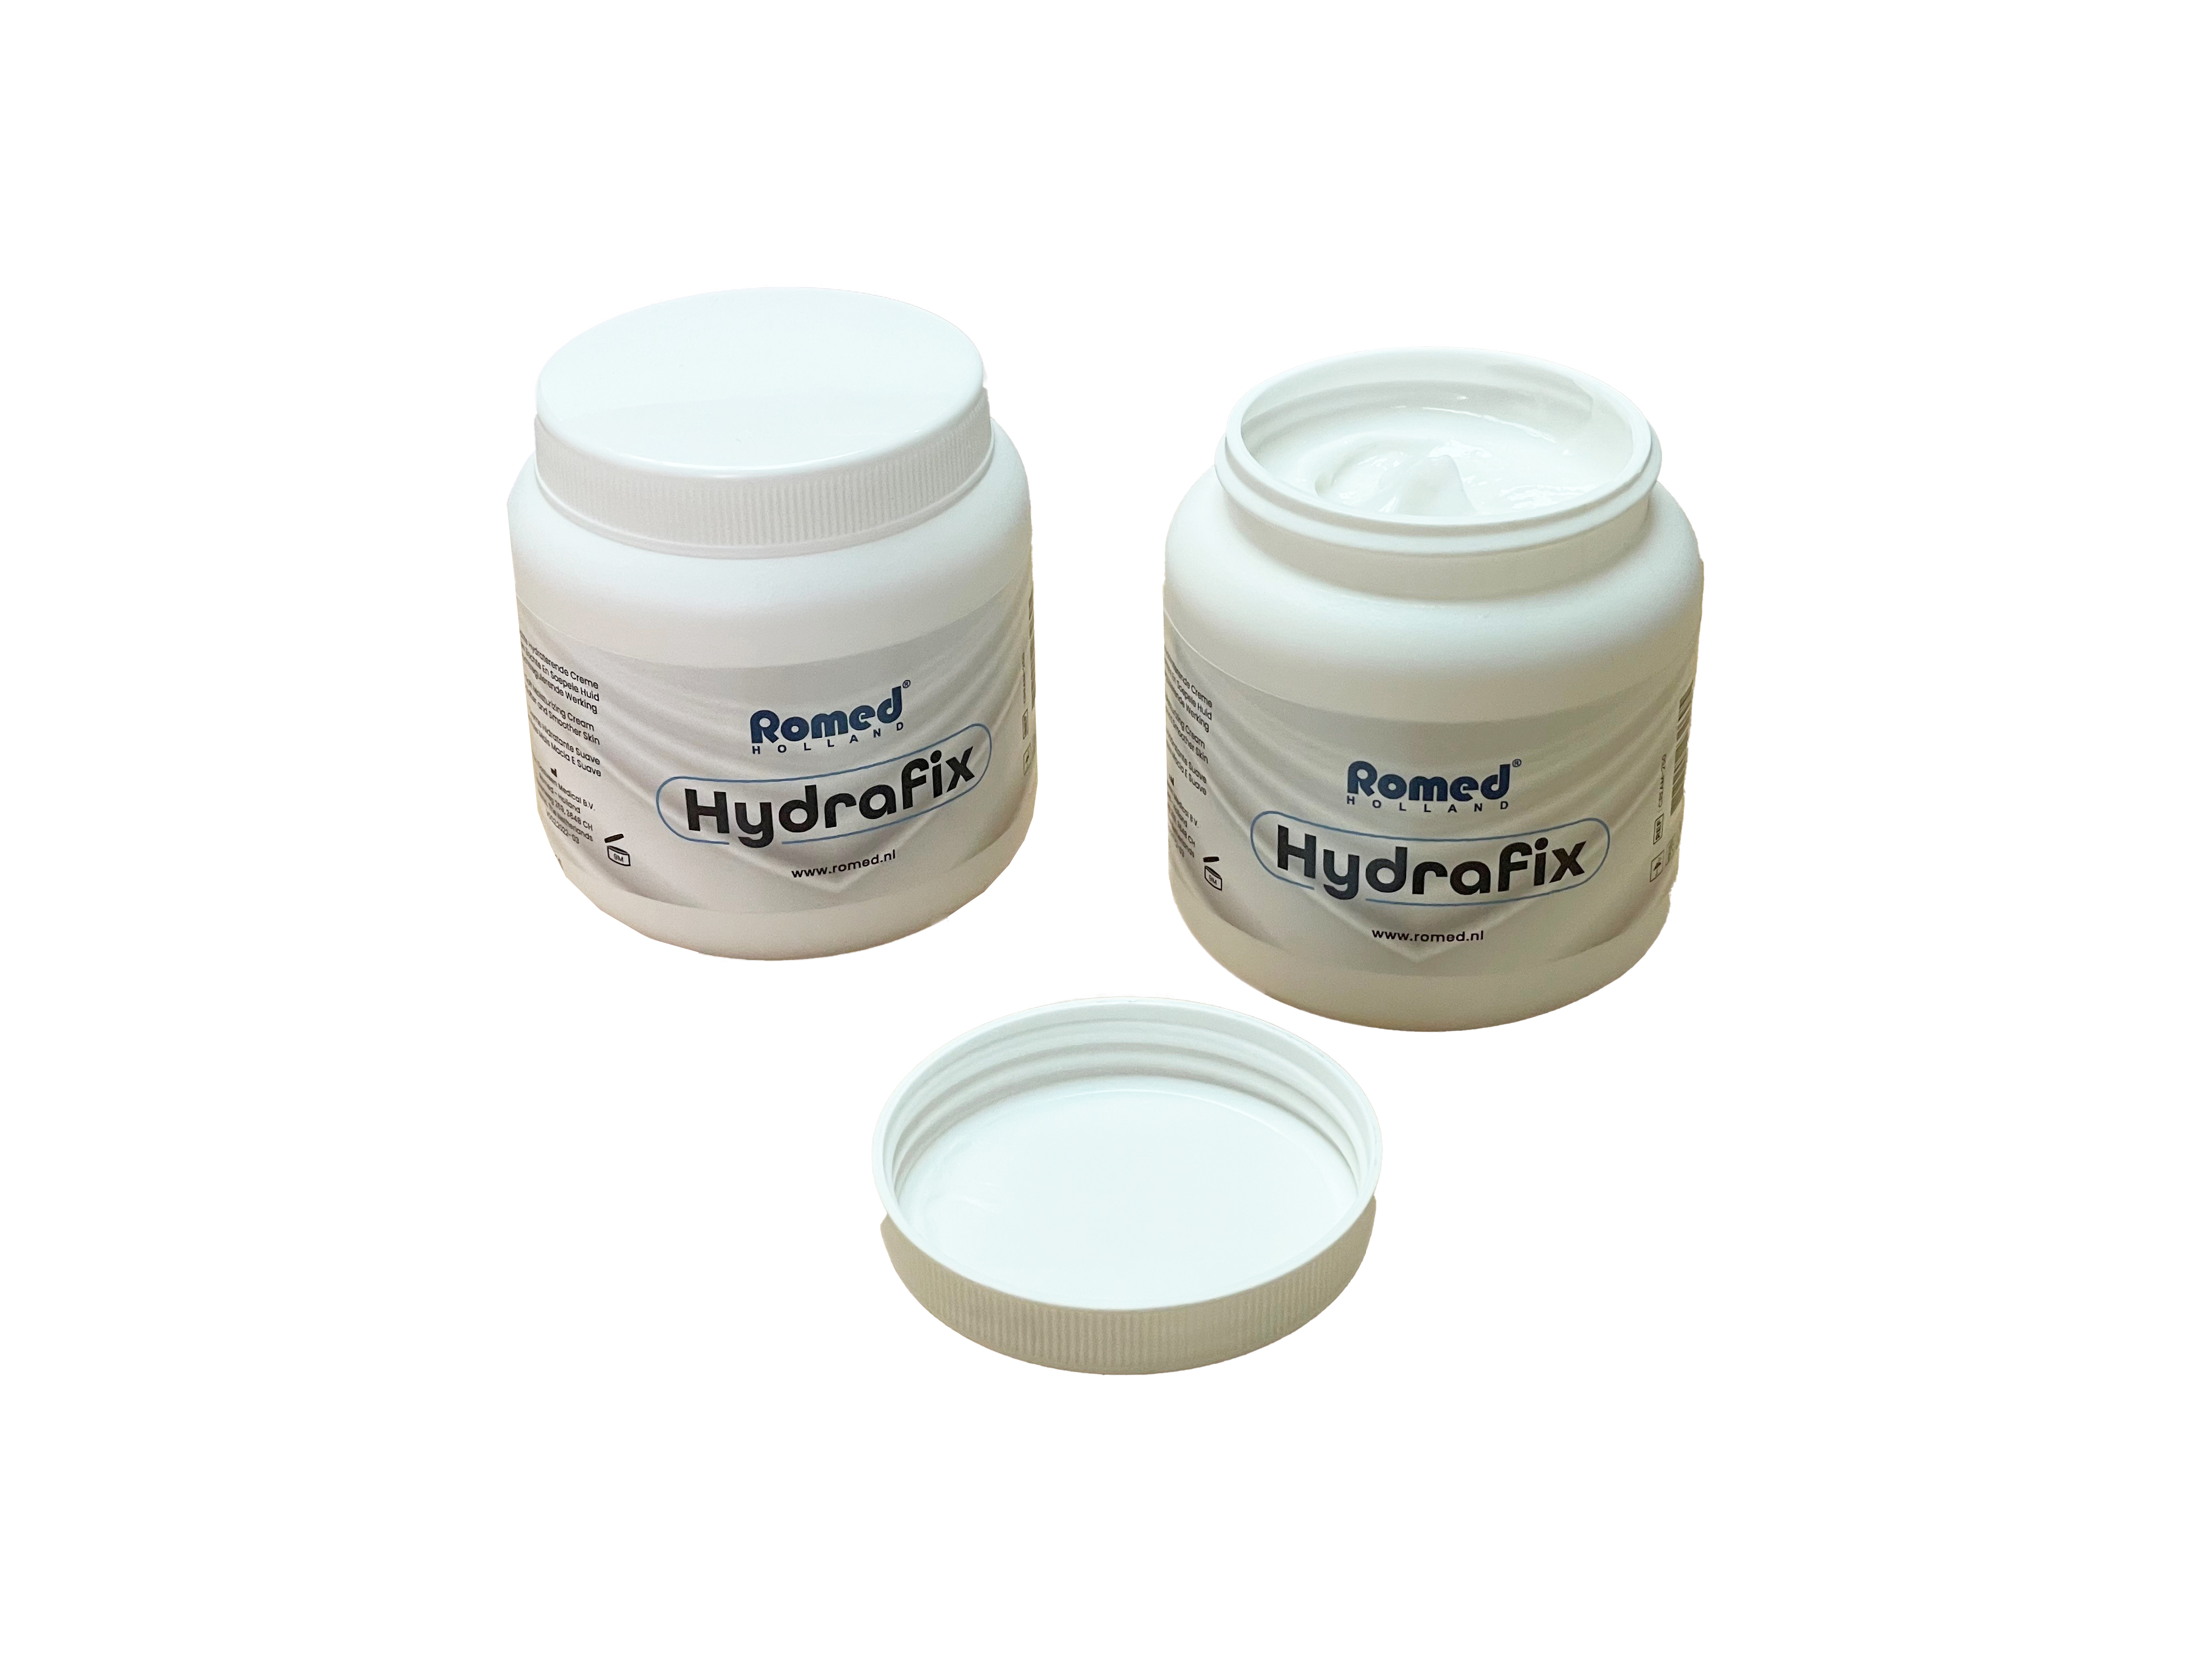 CREAM-250 Crema hidratante suave Romed, Hydrafix, 250 g, 22 unidades en una caja de cartón.